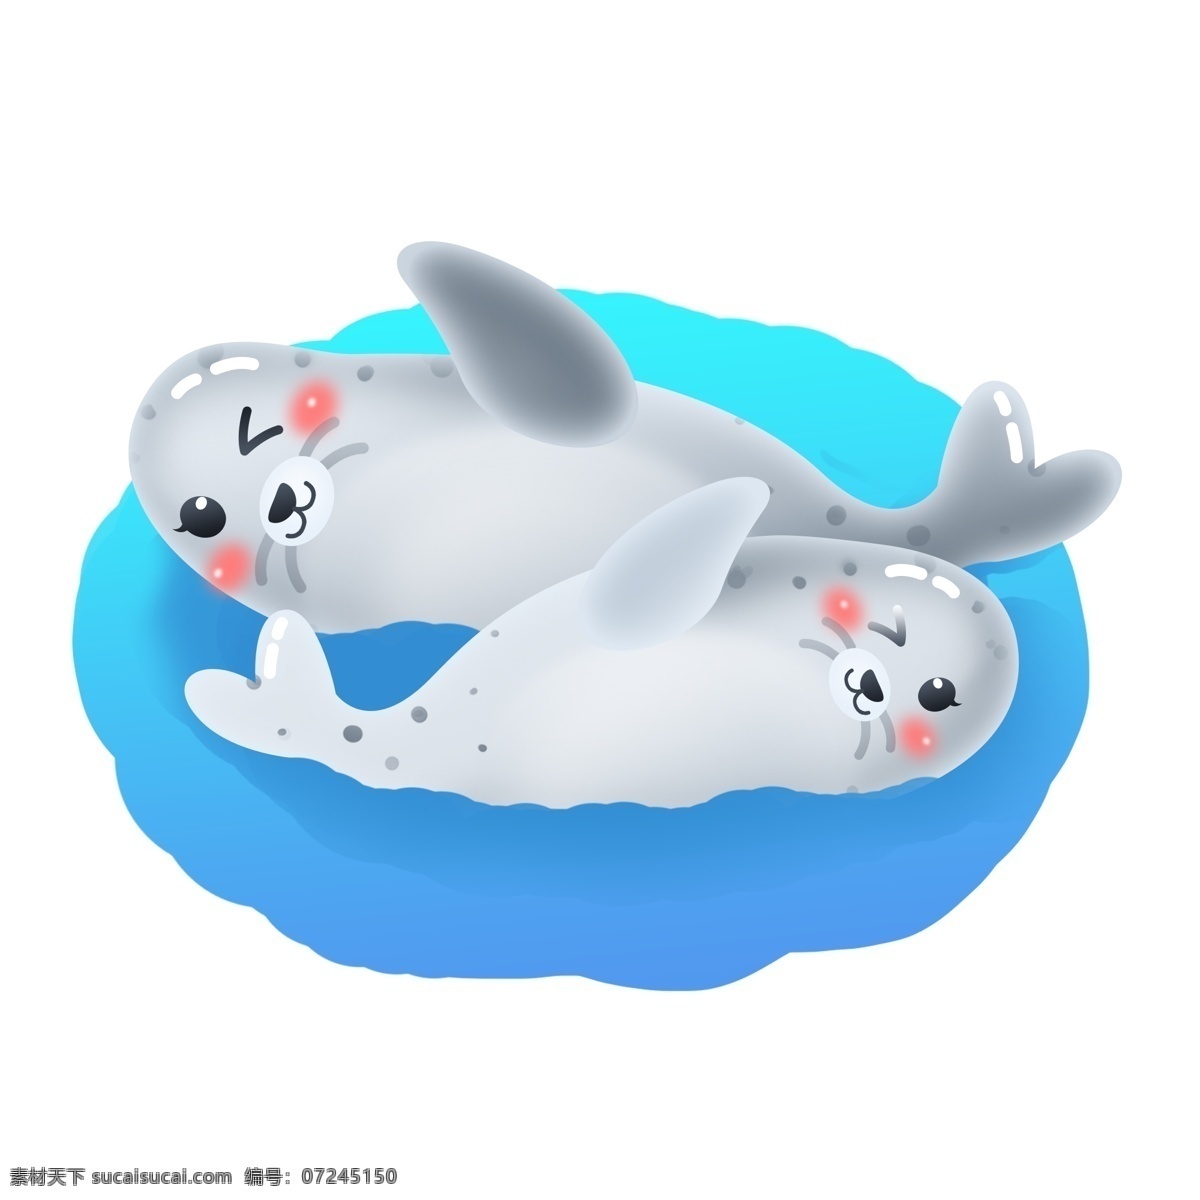 国际 海豹 节 卡通 可爱 游泳 矢量 南极 动物 公益 3月1日 小海豹 爱护动物 商用